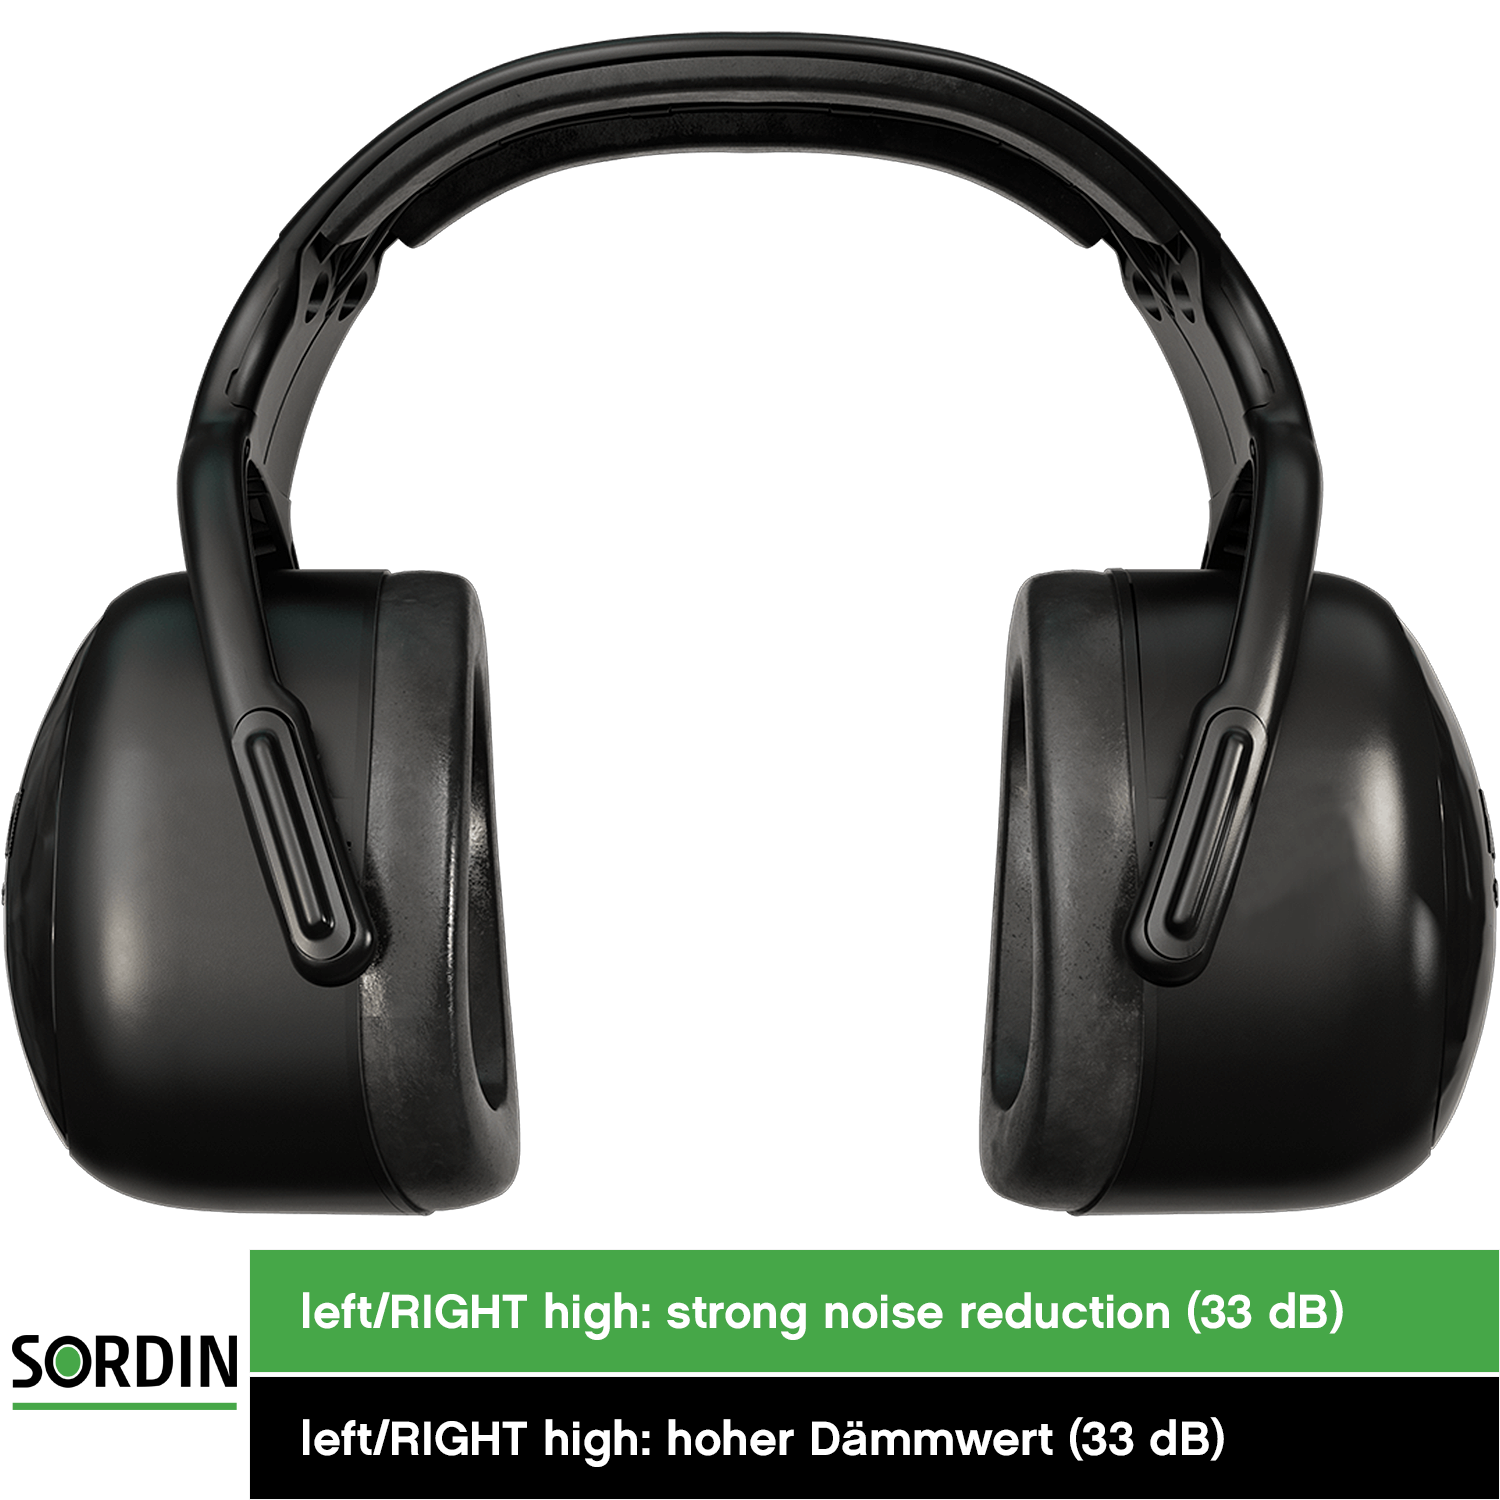 Sordin left/RIGHT high Kapsel-Gehörschutz - Ohrenschützer mit 33 dB SNR -  passiver Gehörschützer für die Arbeit